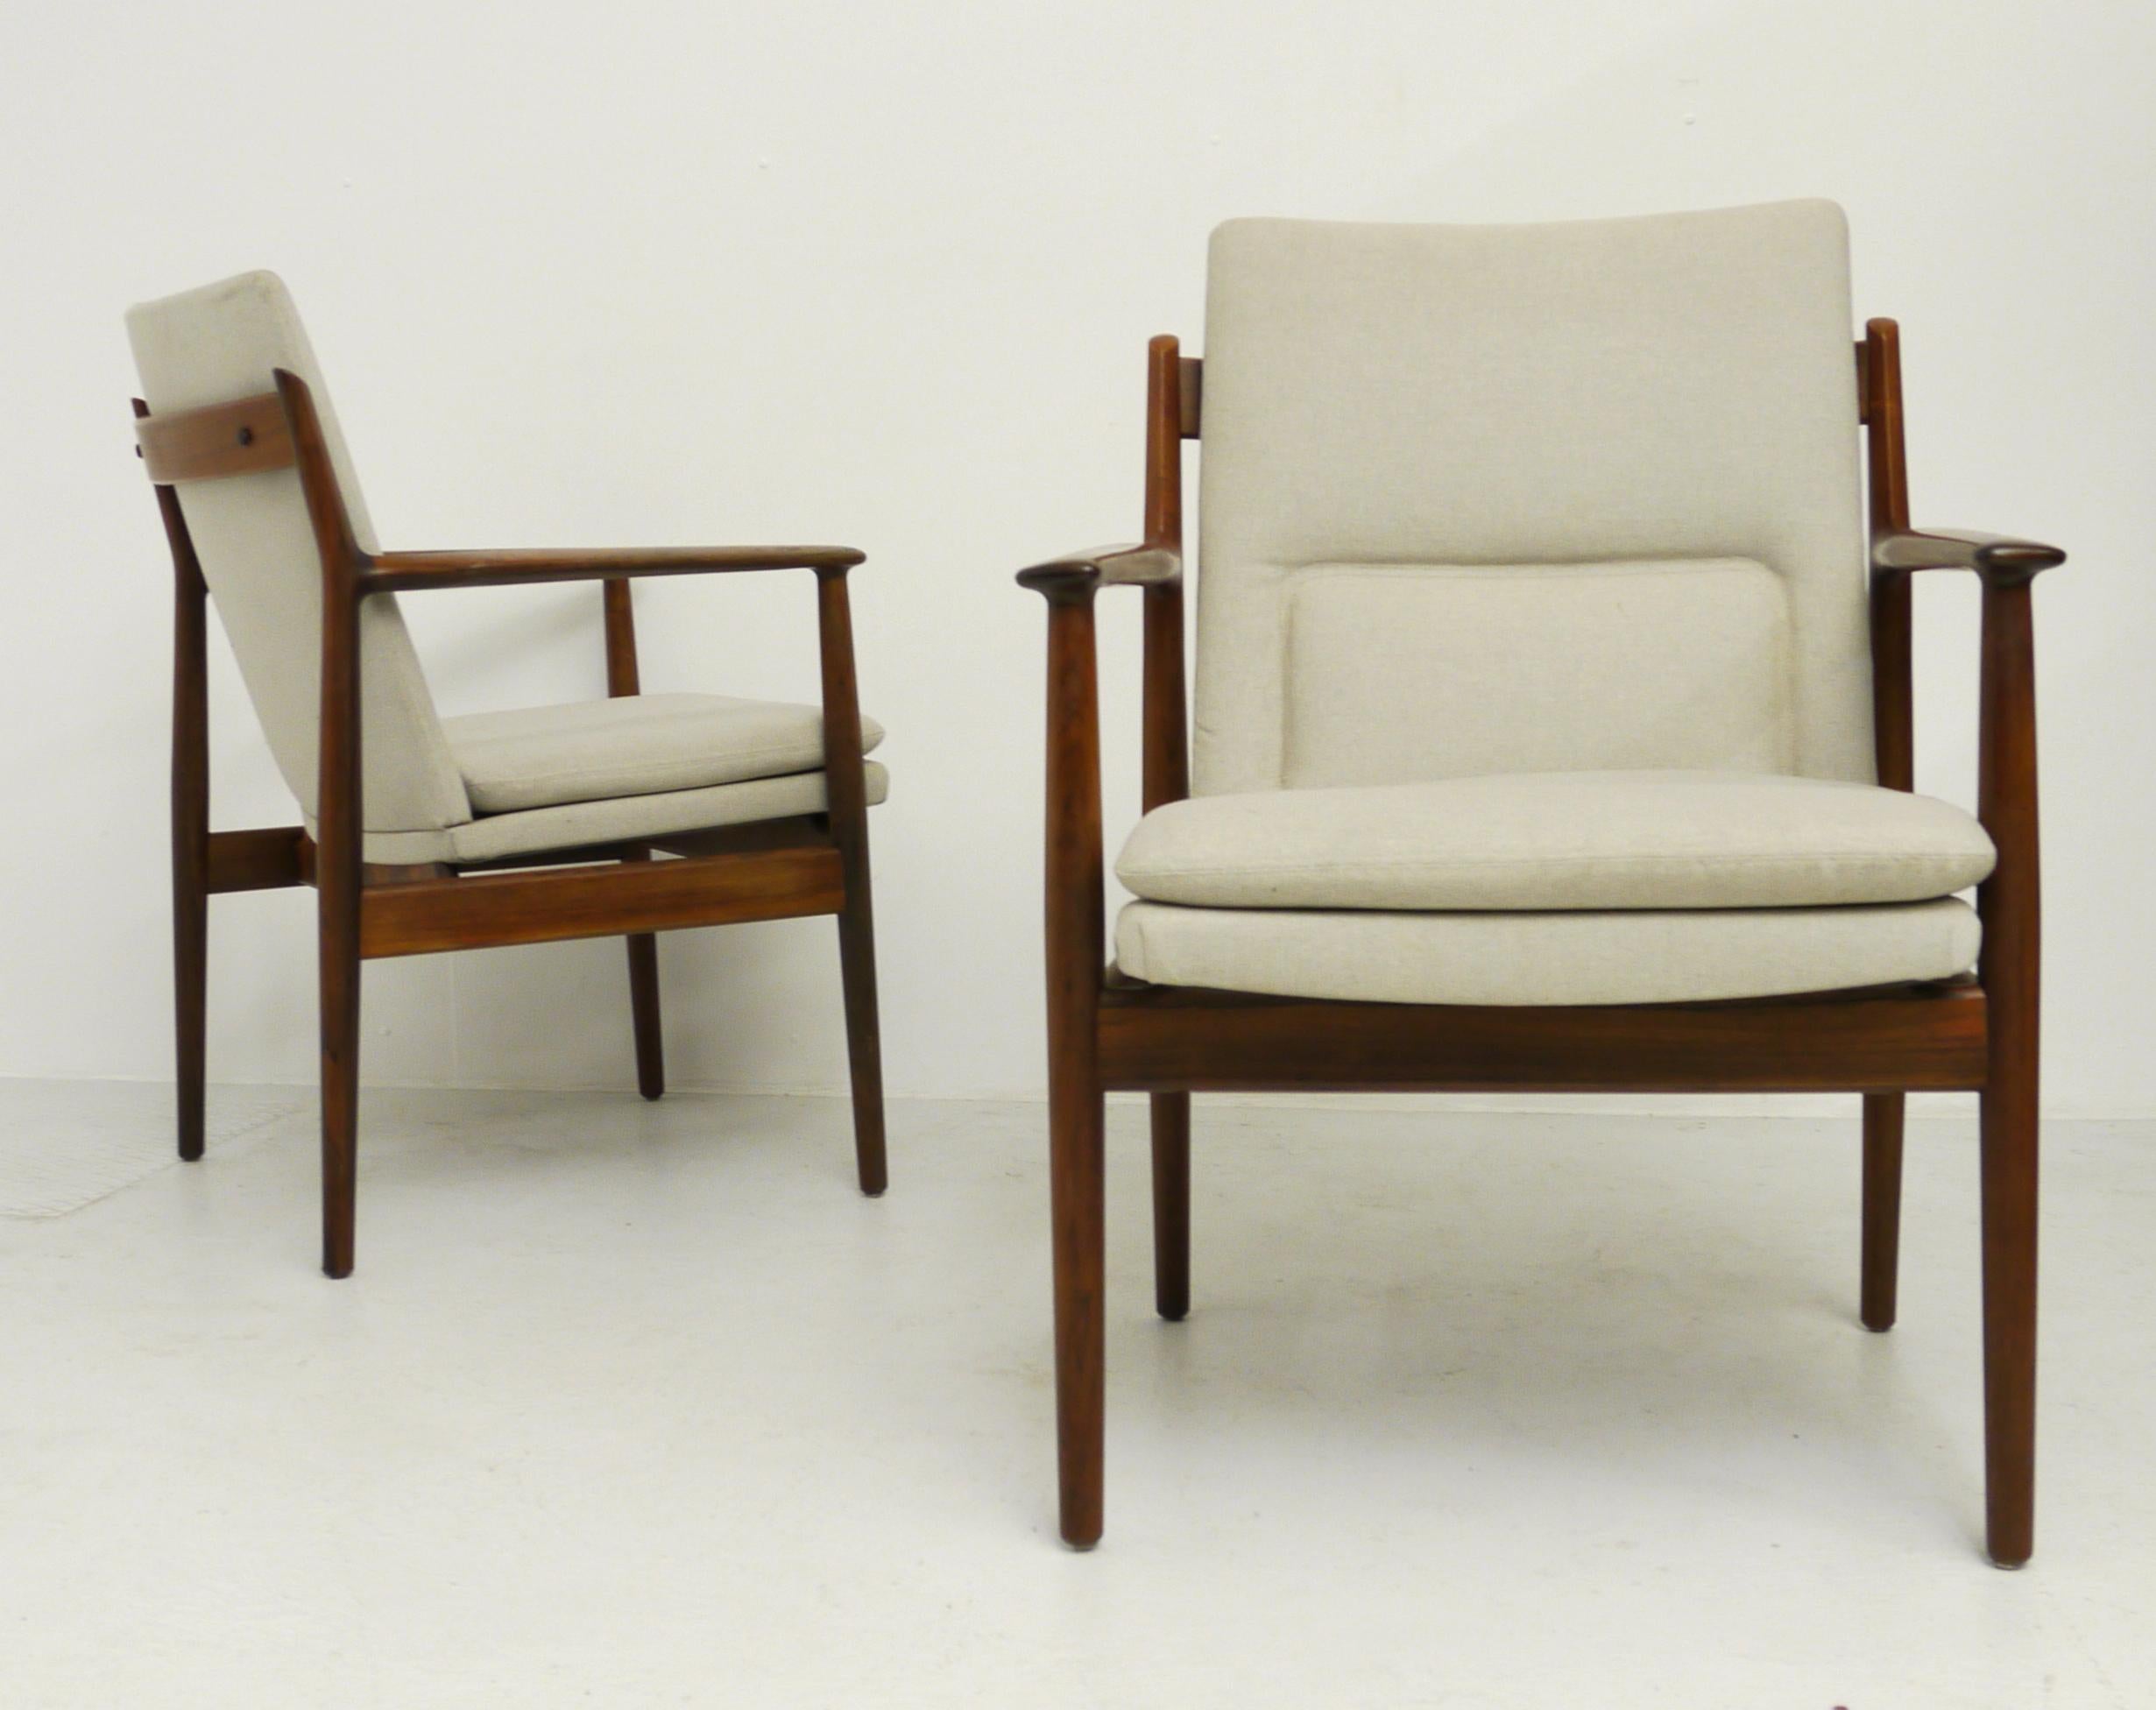 Un ensemble rare de fauteuils, modèle 431, conçu par Arne Vodder. Fabriqué au Danemark dans les années 1960, produit par Sibast Mobler. Il est doté d'un cadre en bois massif en palissandre et d'un rembourrage en beige. Très bon état vintage.